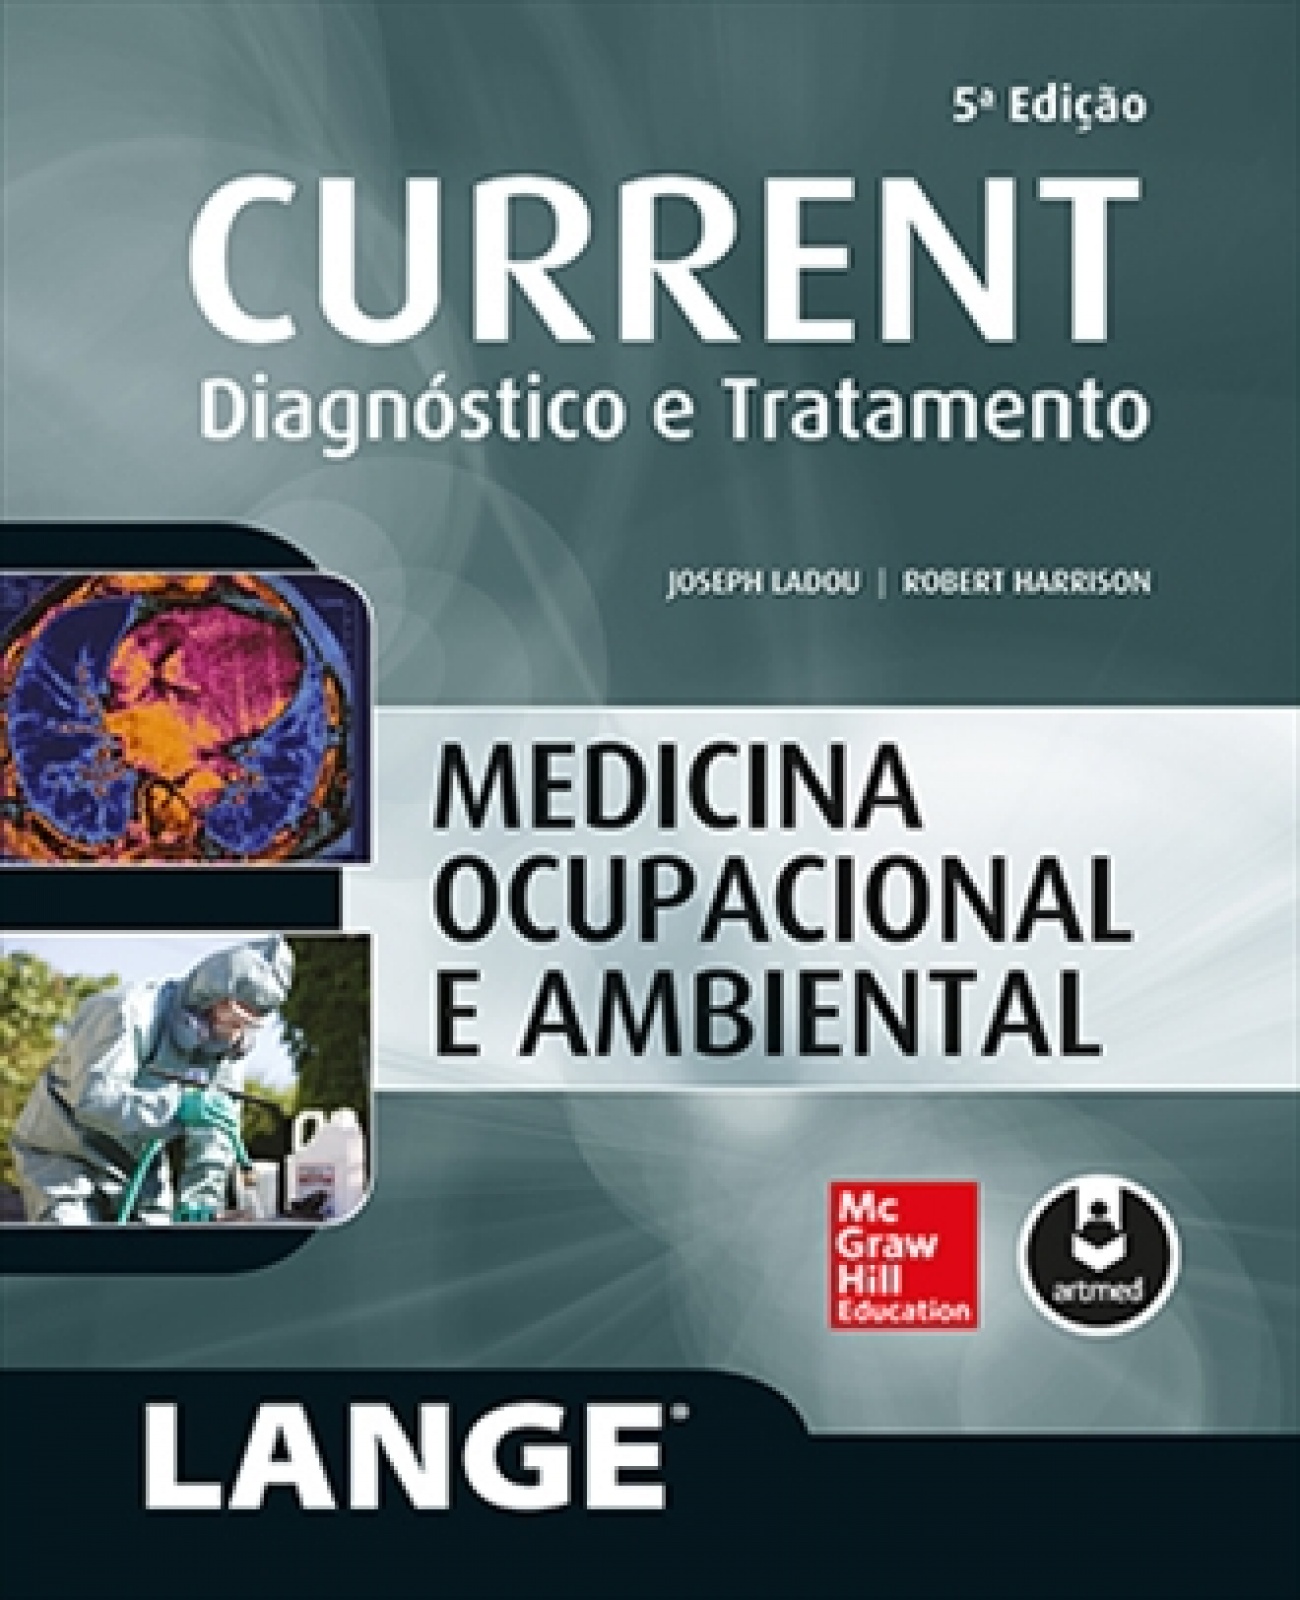 Current: Medicina Ocupacional E Ambiental (Lange) Diagnóstico E Tratamento 5ª Edição 2016